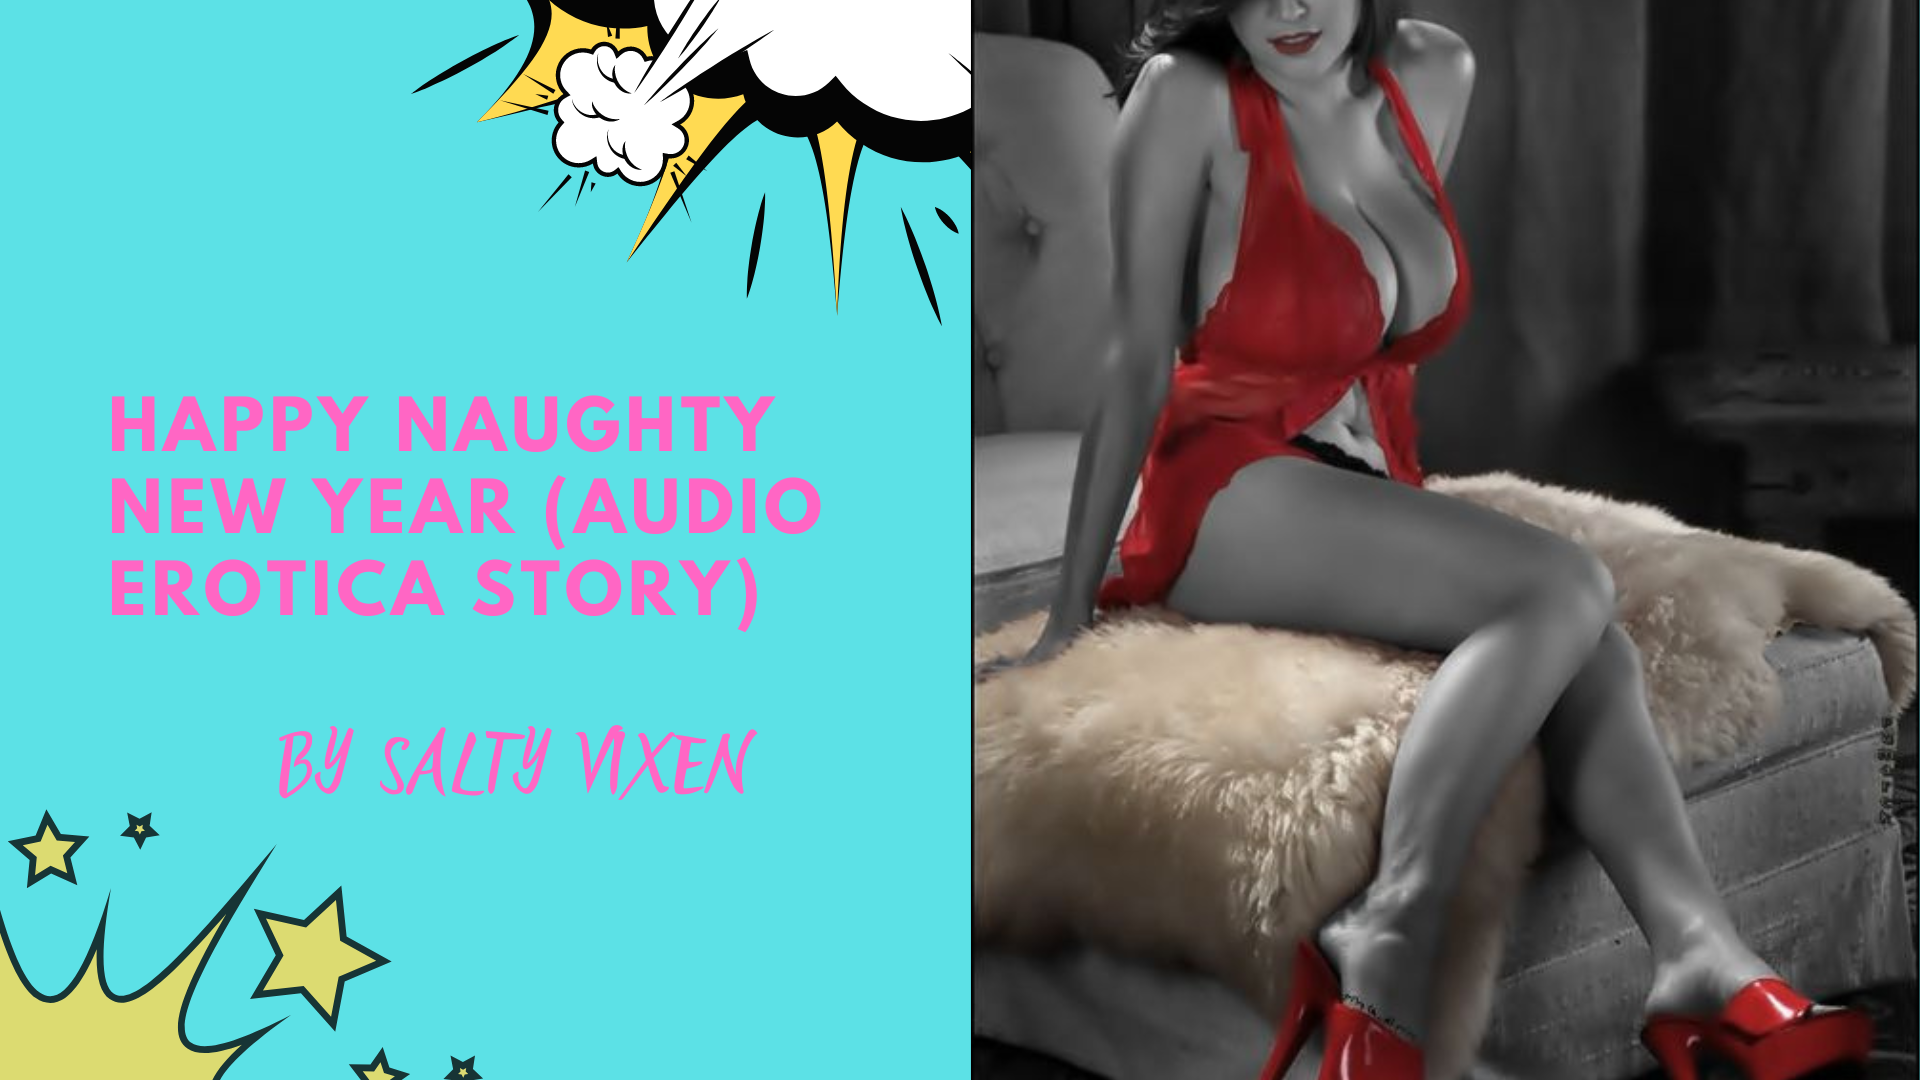 Happy Naughty New Year (Audio Erotica Story)